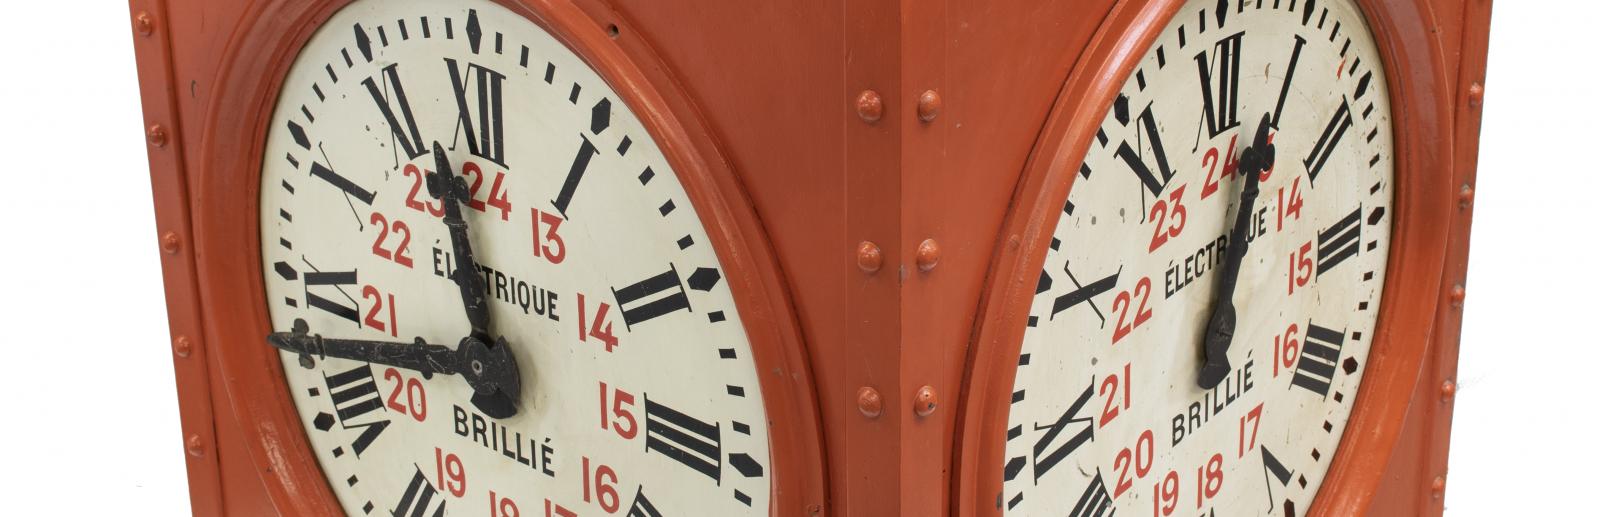  Horloge à trois cadrans, début 20e siècle. Objet collecté dans les sous-sols de la poste du Louvre avant sa rénovation en 2016 © Musée de La Poste - La Poste / Thierry Débonnaire, 2019